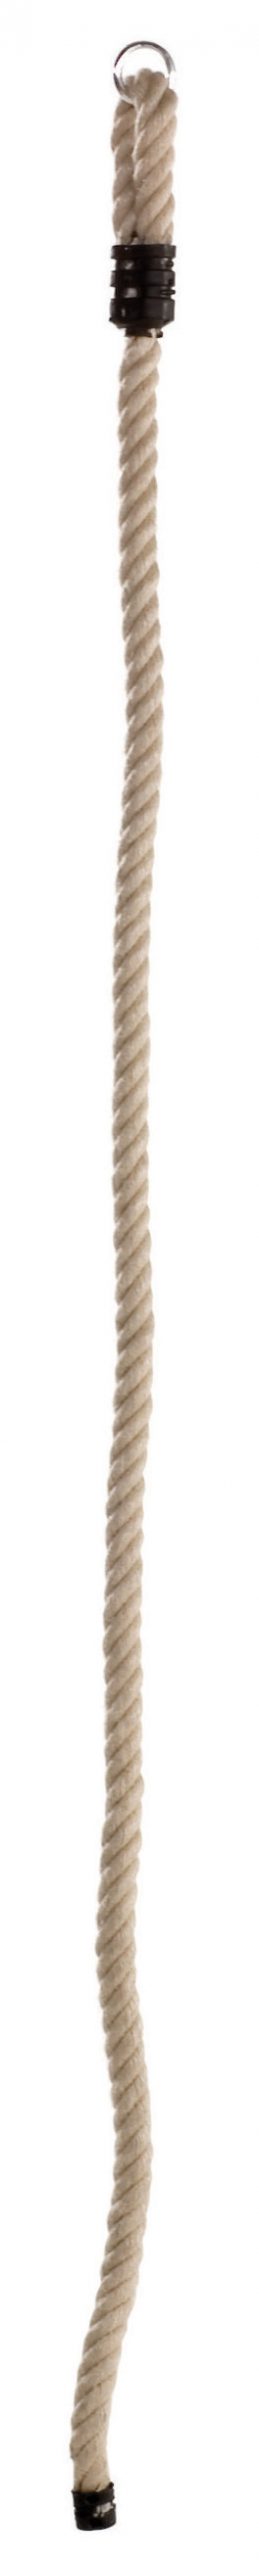 Klimtouw 25 mm. (PH-touw) lengte 2 m schommel accessoire